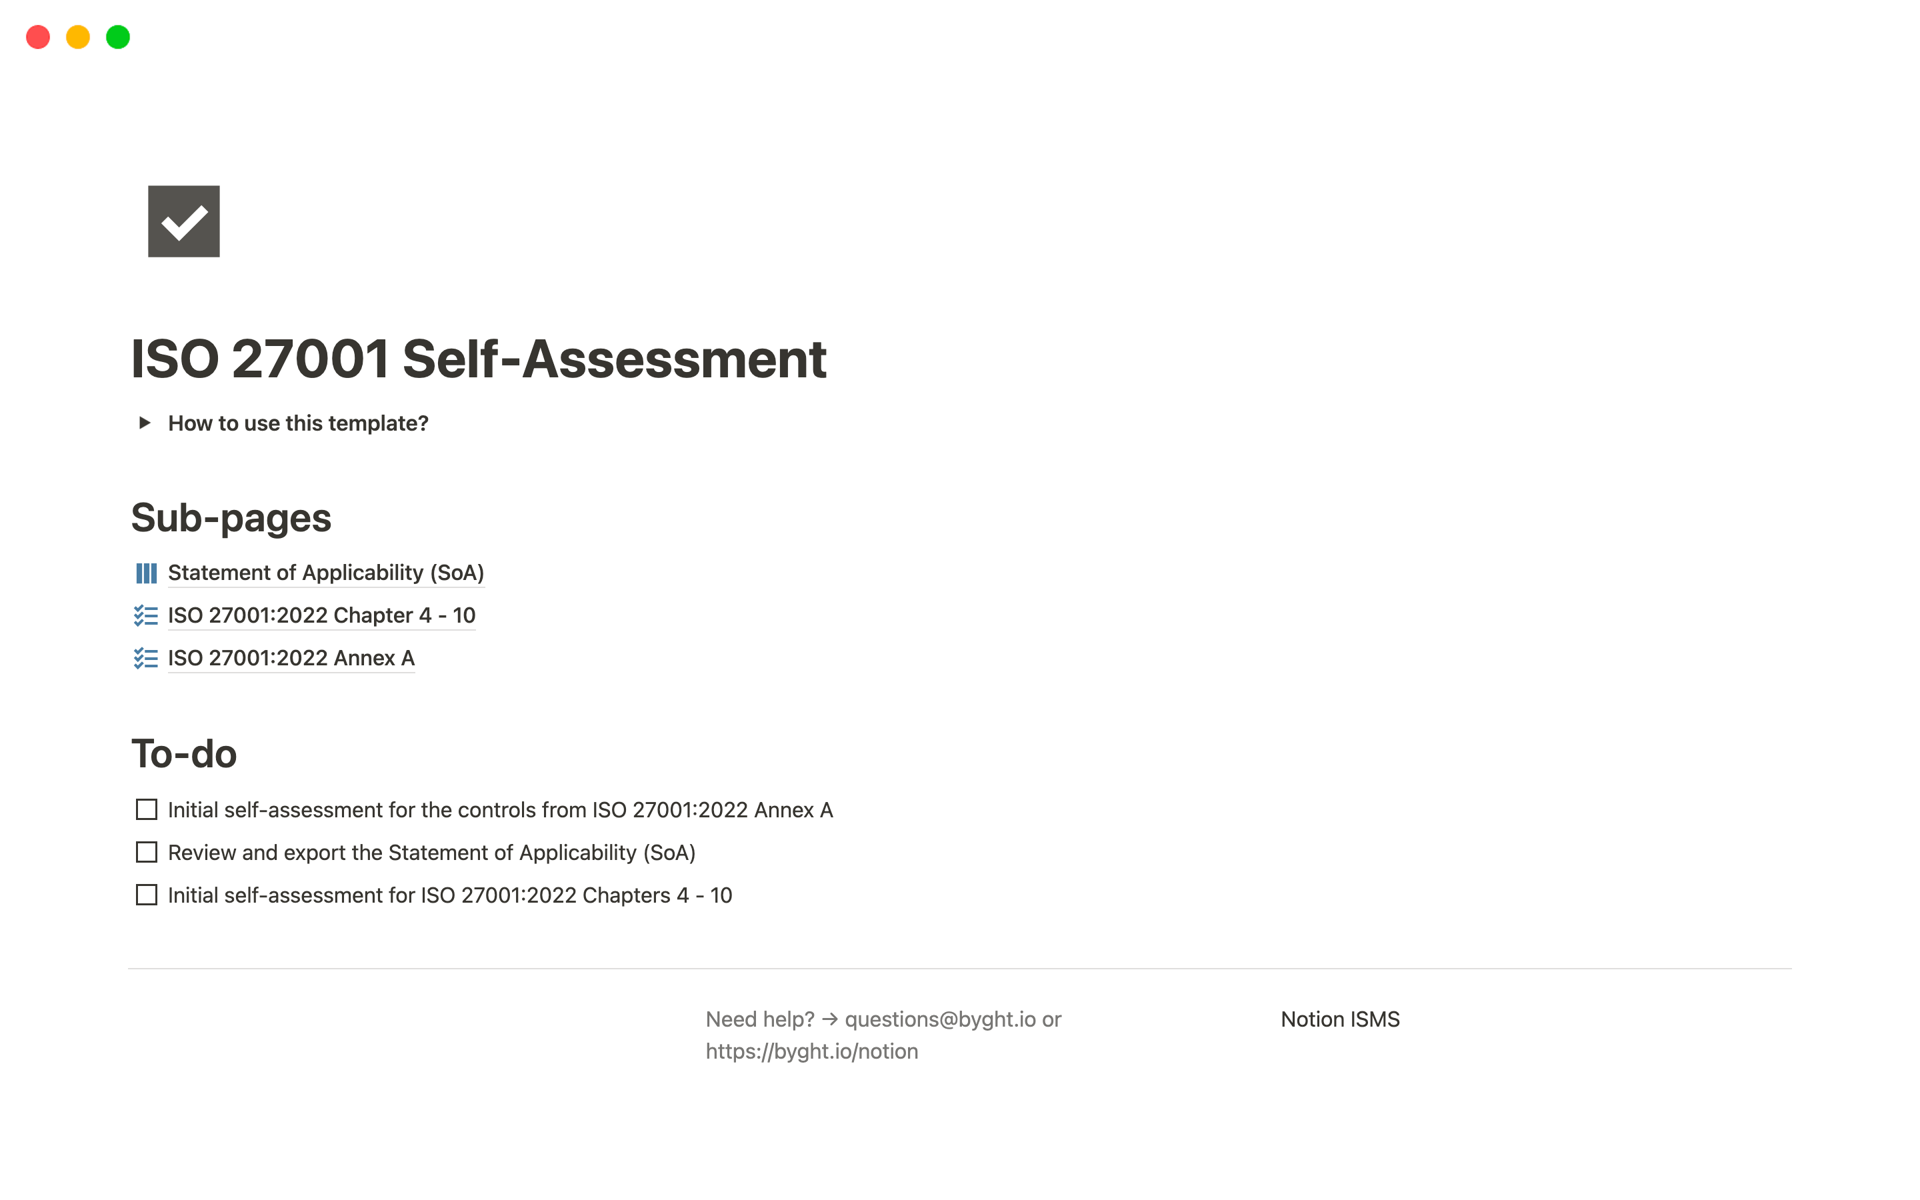 Vista previa de una plantilla para ISO 27001 Self-Assessment